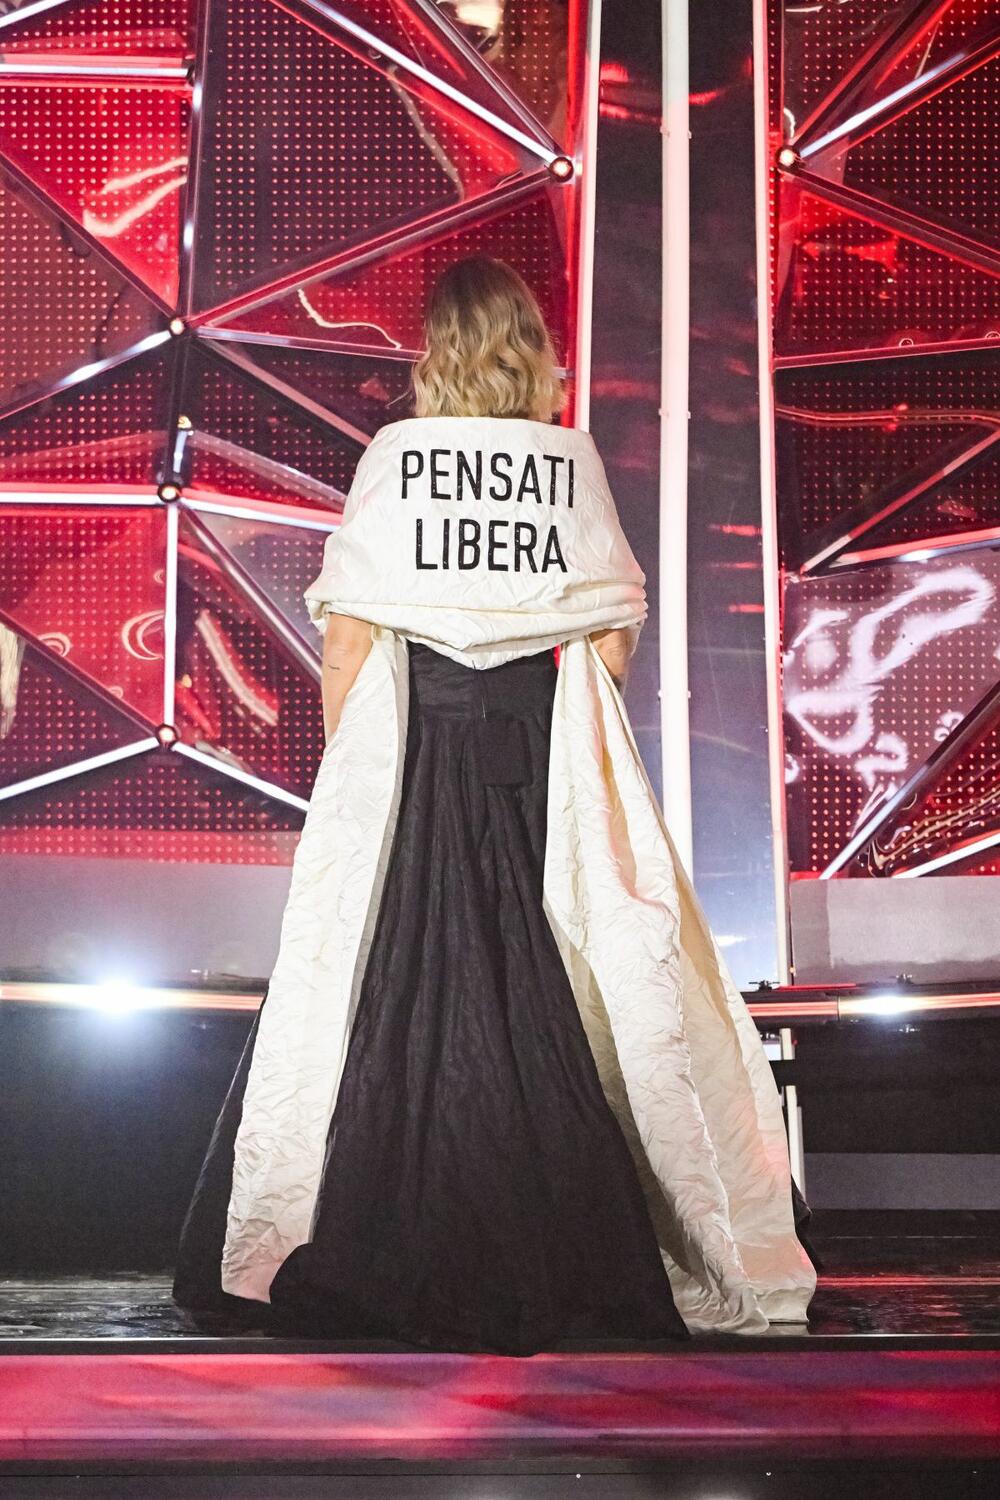 Pensati libera - poruka na haljini Kjare Feranji